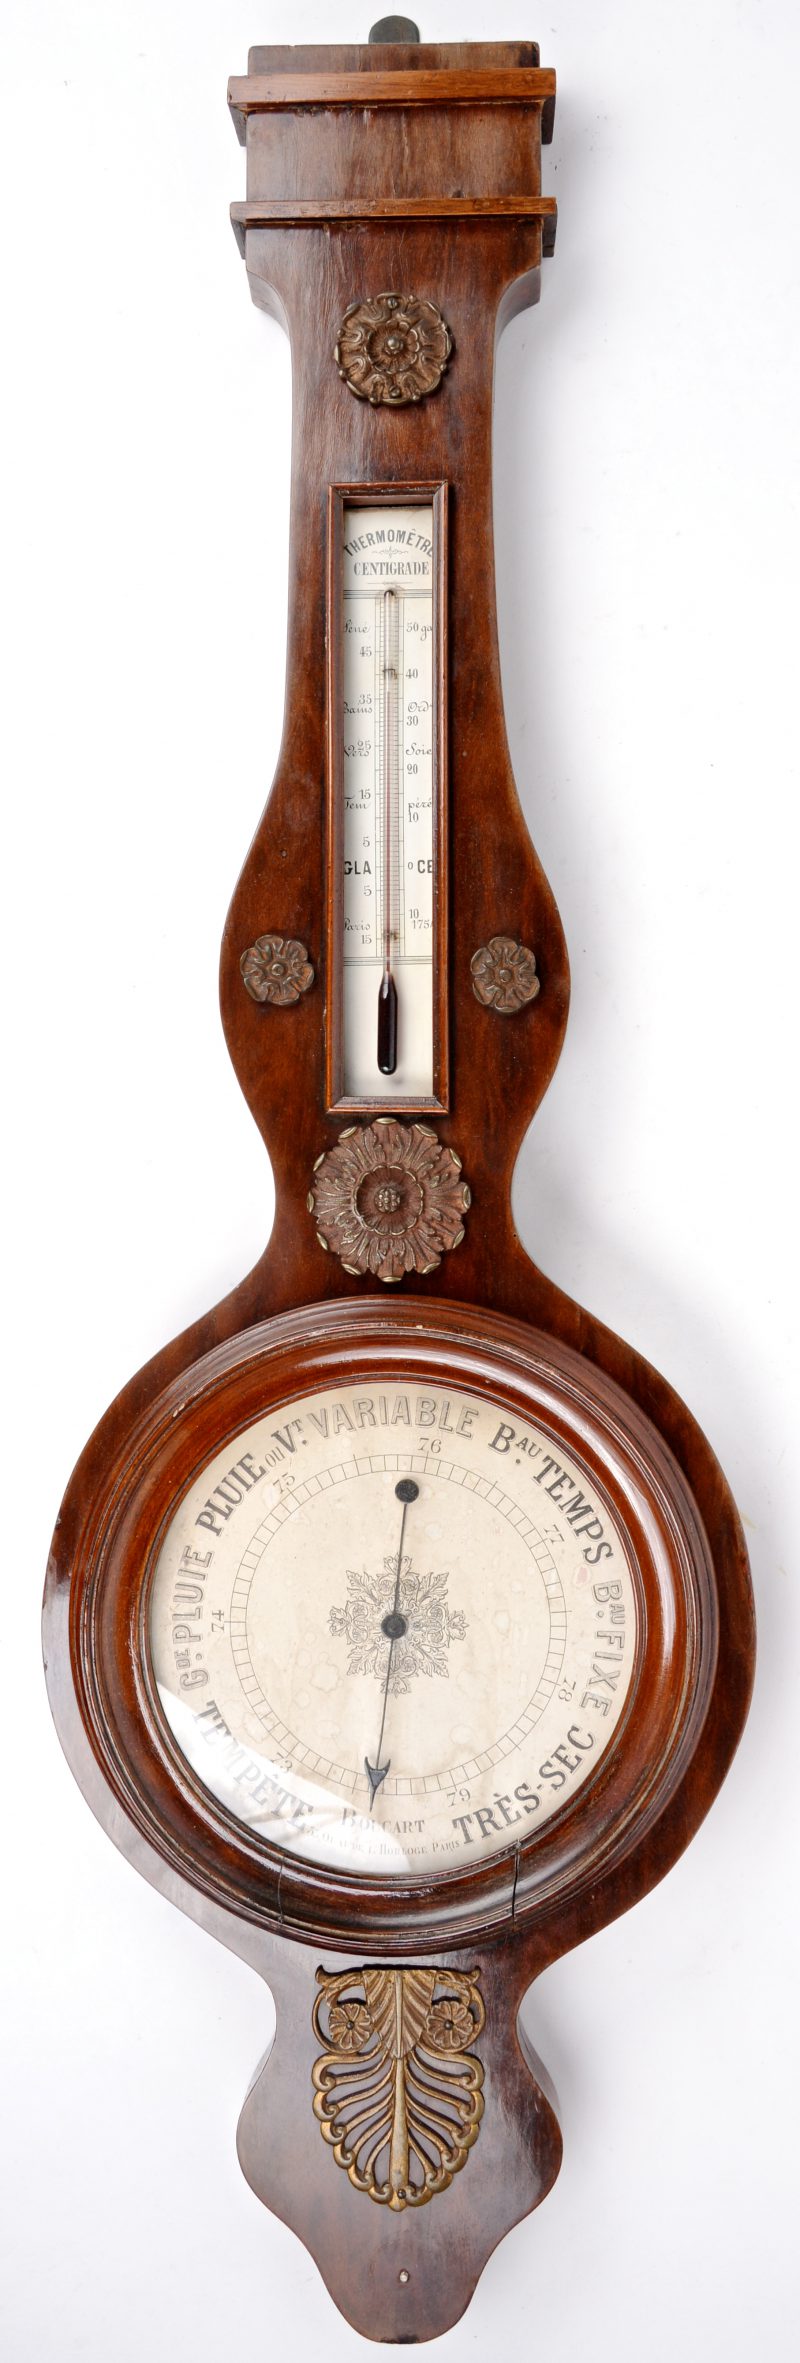 Een banjobarometer in mahoniehouten kast. XIXe eeuw.